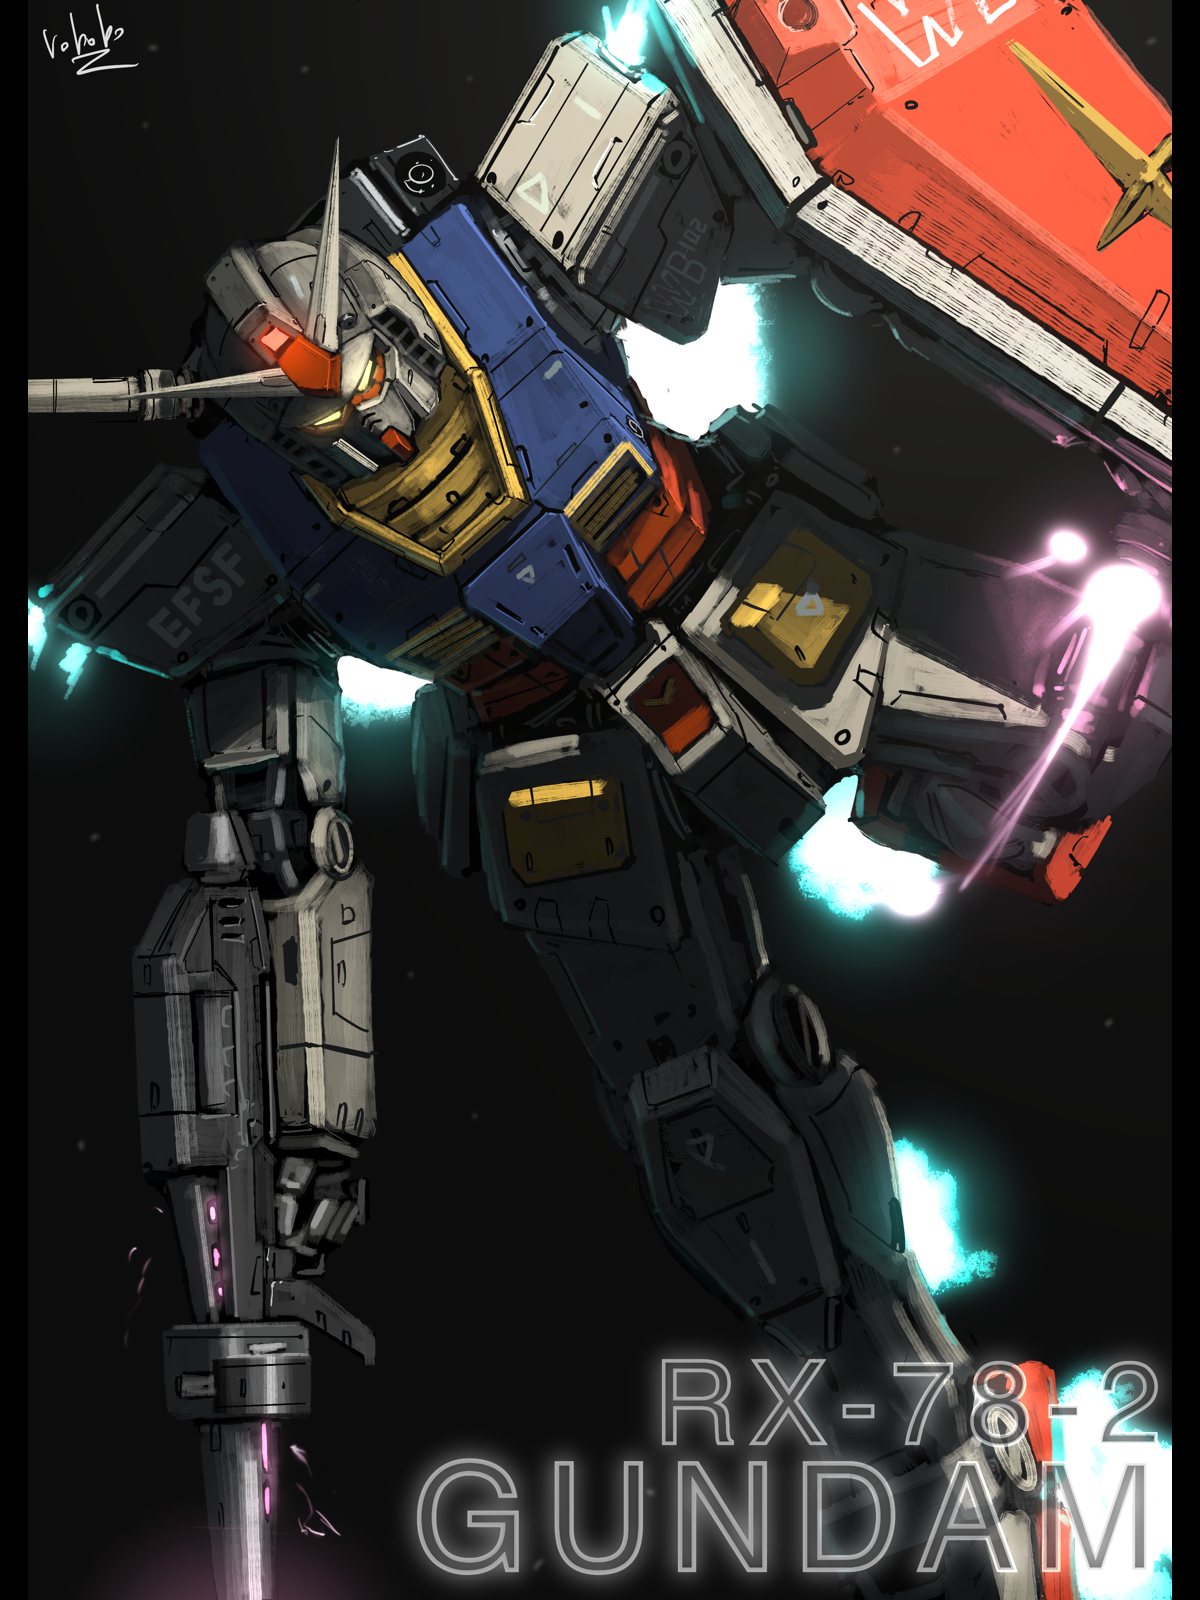 Anime 1200x1600 anime mechs Gundam Super Robot Taisen artwork digital art fan art RX-78 Gundam Mobile Suit Gundam